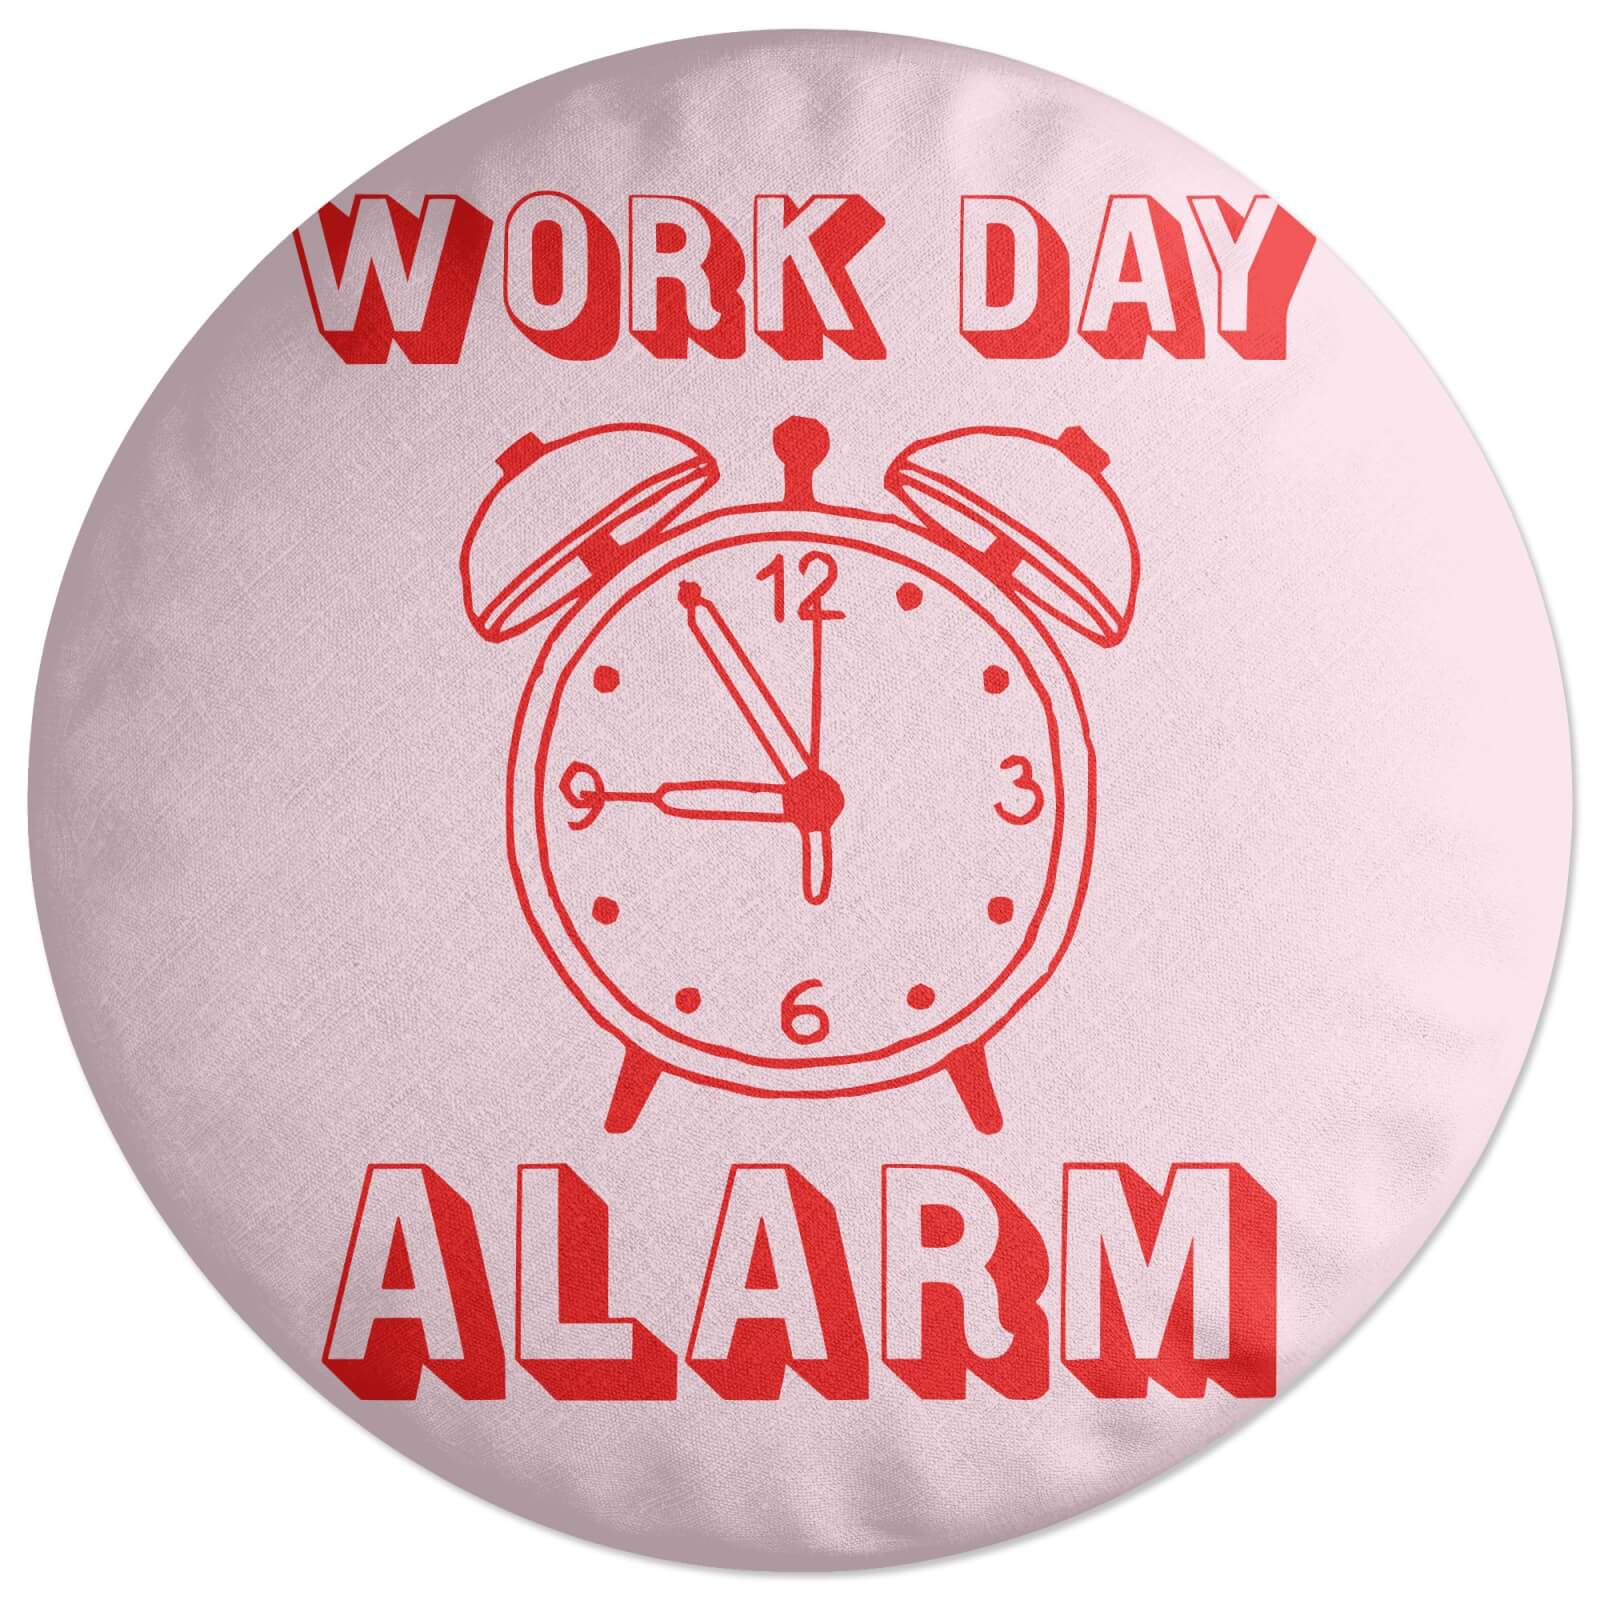 Work Day Alarm Round Cushion